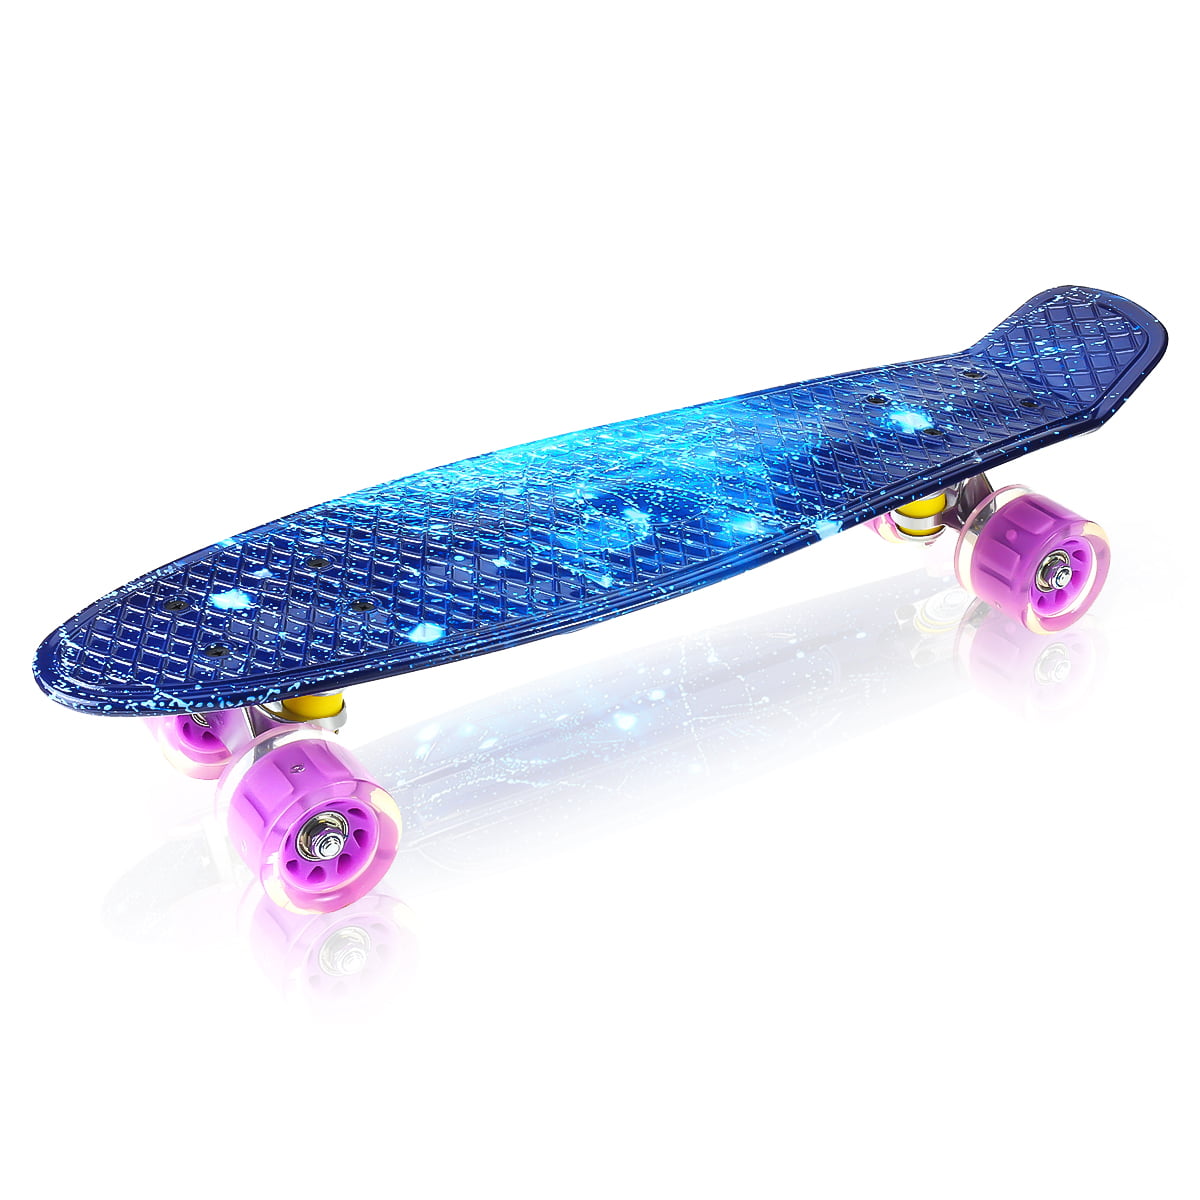 22" Skateboard pennyboard Retro Skateboard Complet Board Longboard Funboard de 